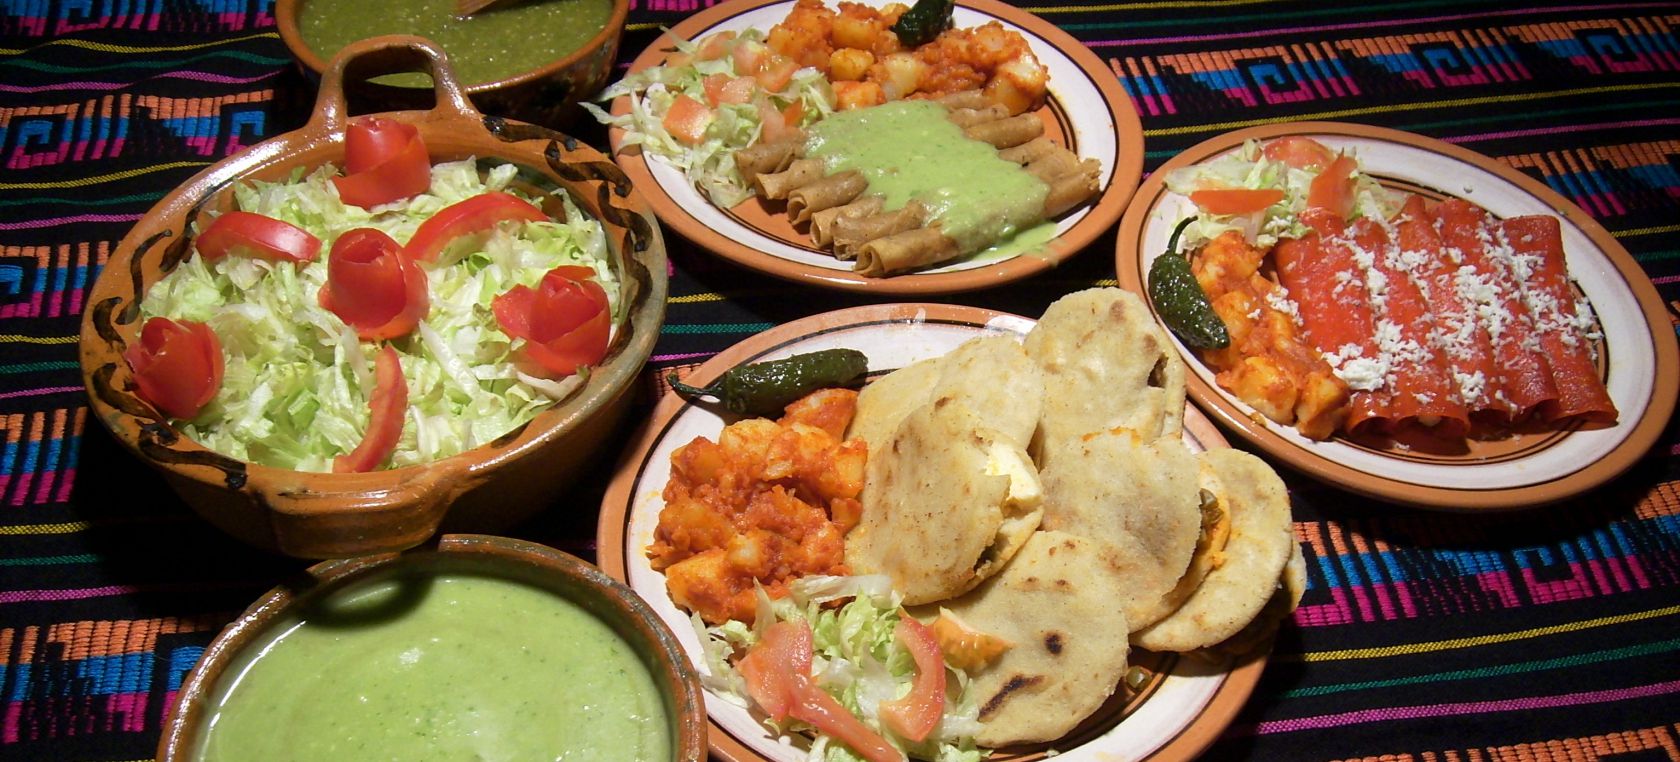 15 de septiembre, comida mexicana: Los platillos mexicanos que no te suben de peso | Moda y Belleza | LOS40 México